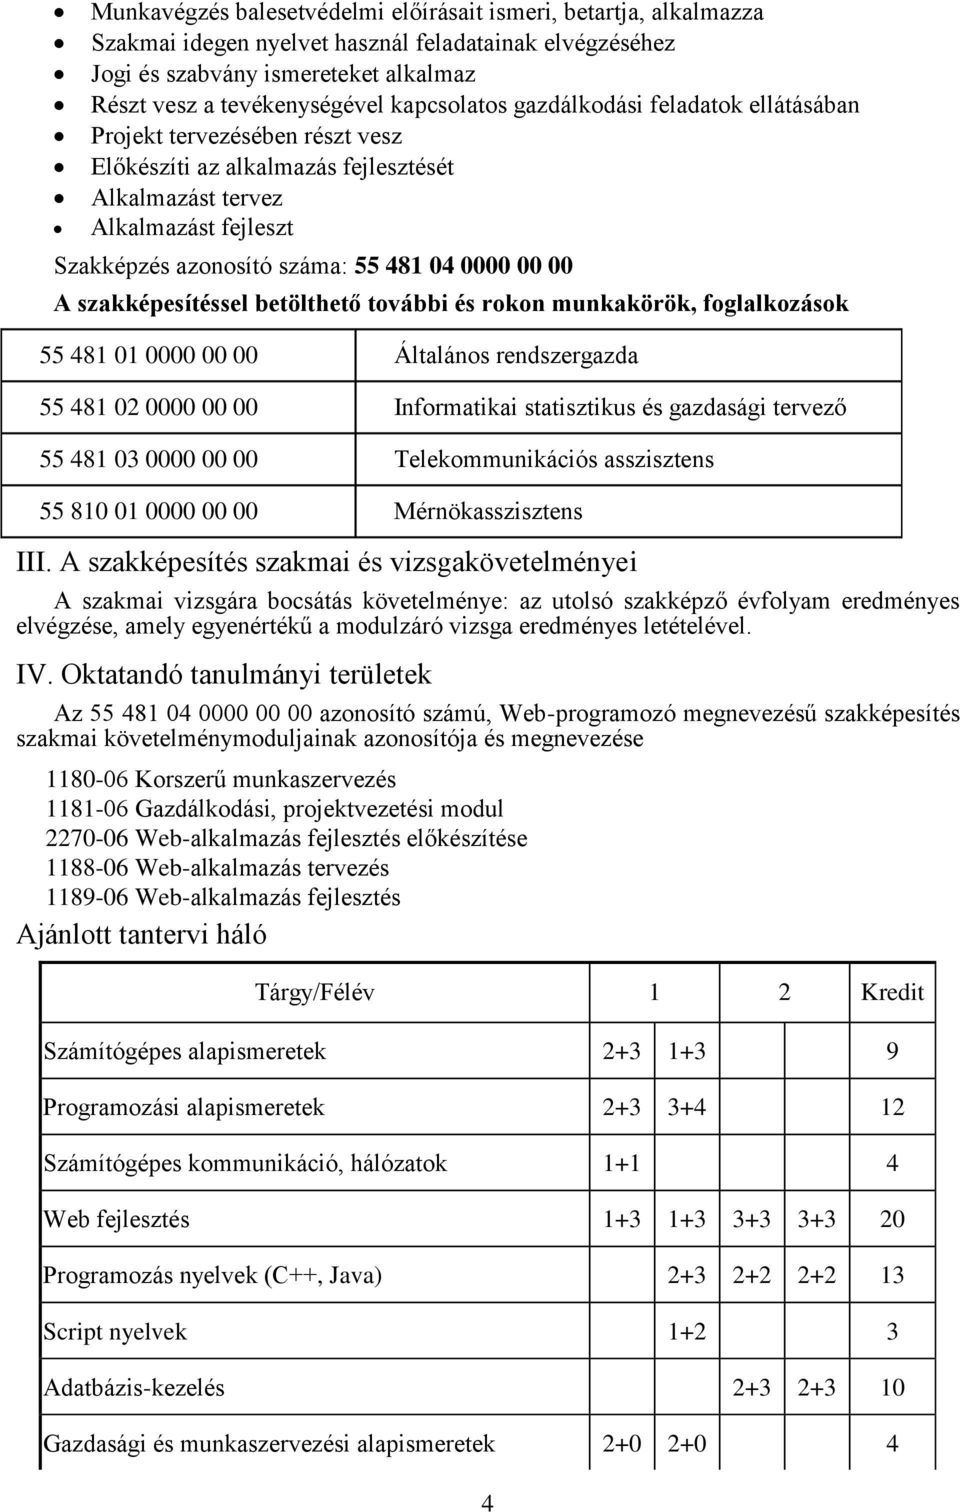 ELTE IK Petrik Lajos Szakközépiskola. Web-programozó (felsőfokú szakképzés)  (NAPPALI - TAGOZAT) - PDF Ingyenes letöltés